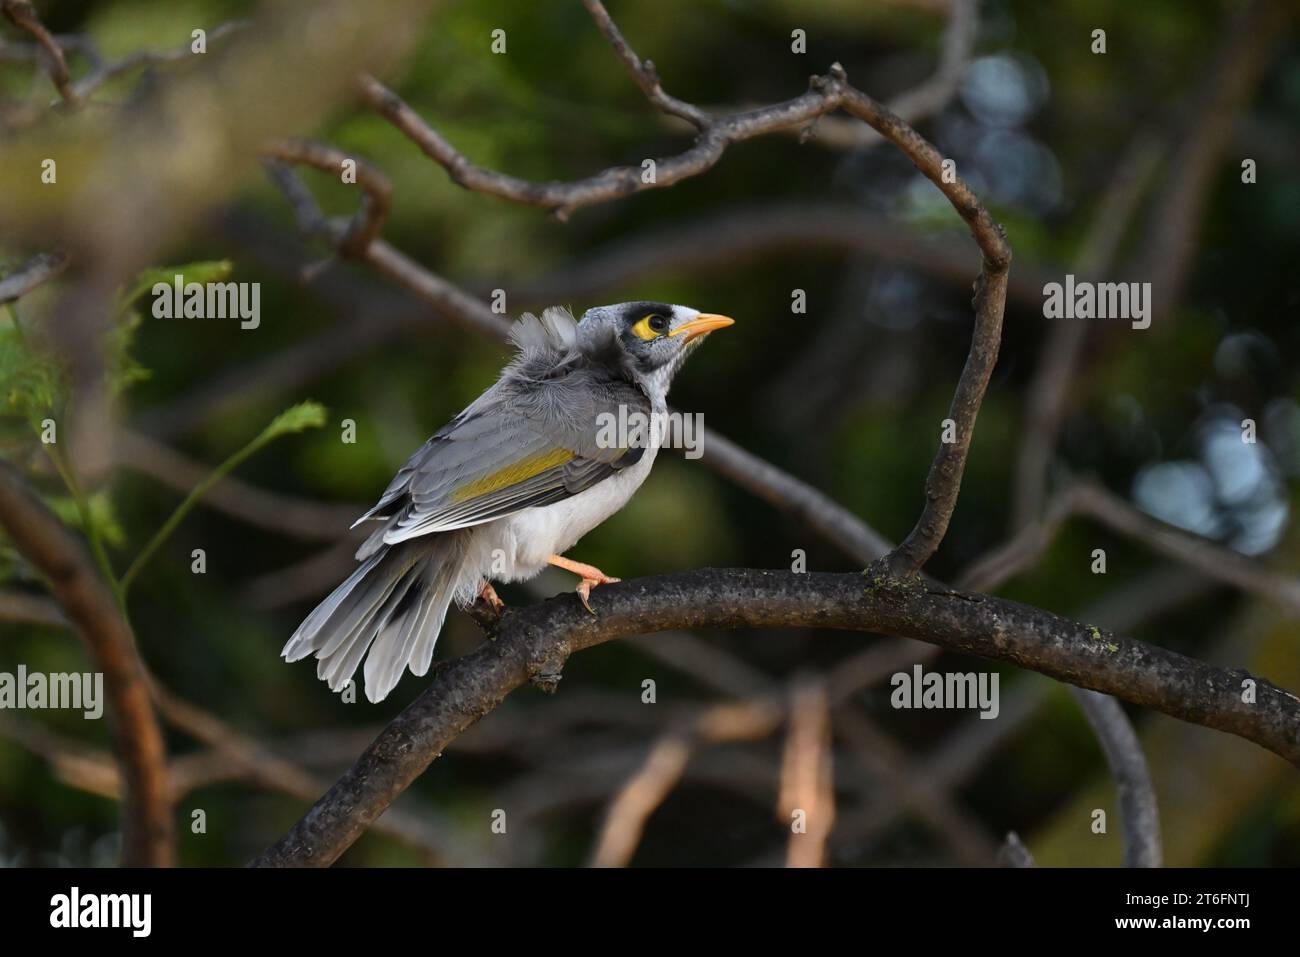 Vue latérale d'un oiseau mineur bruyant perché haut dans un arbre ombragé Banque D'Images